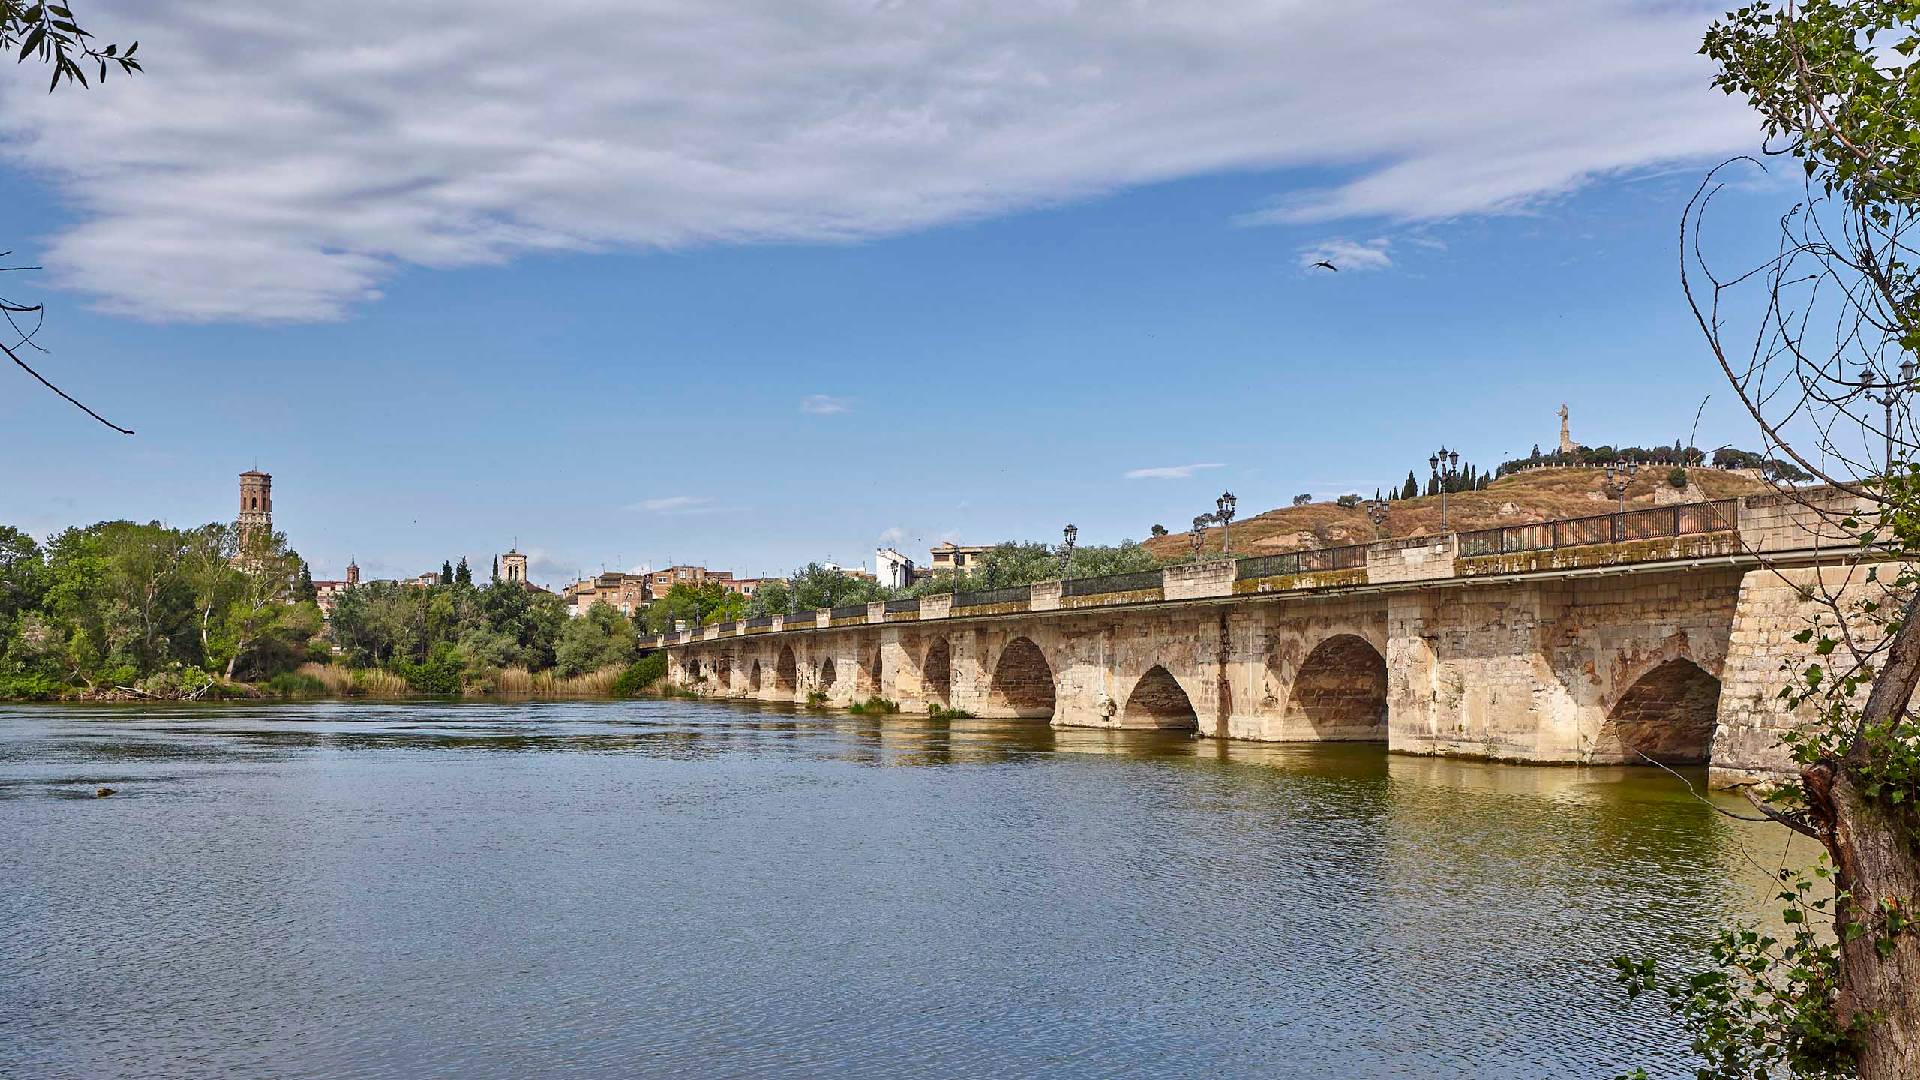 Ebro Bridge of Tudela